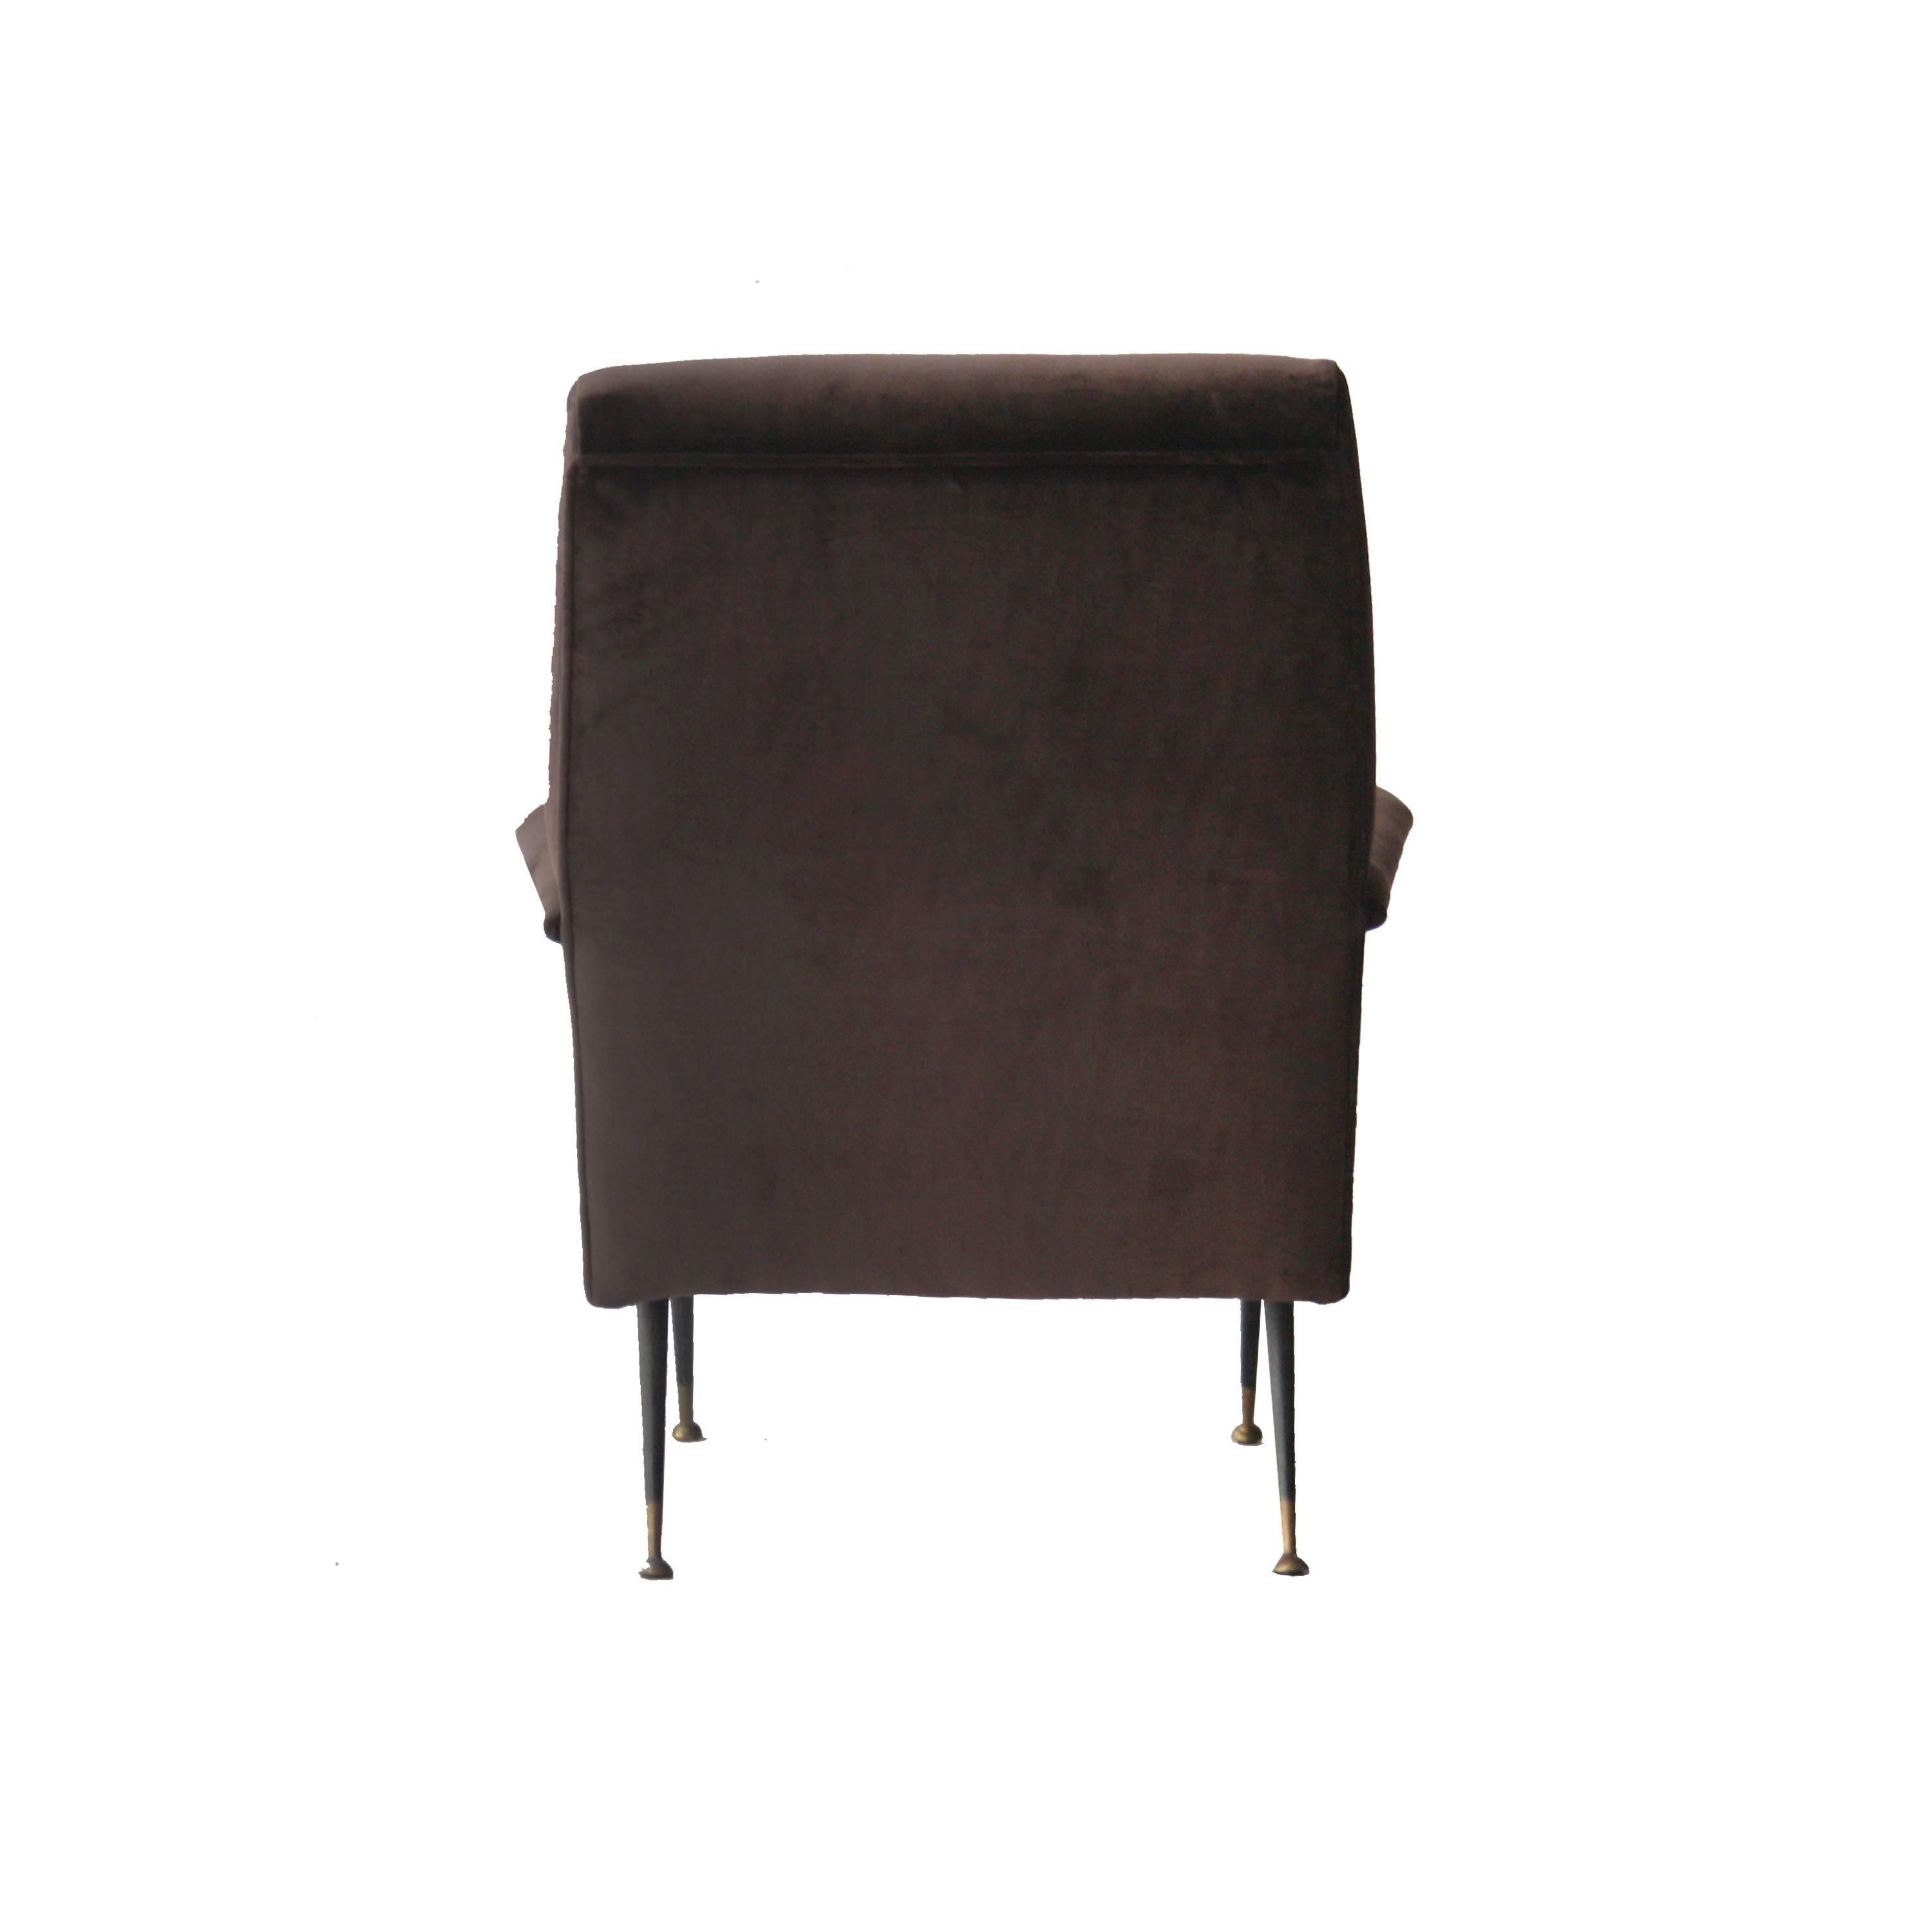 Italian Armchair Upholstered in Brown Cotton Velvet, Italy, 1950